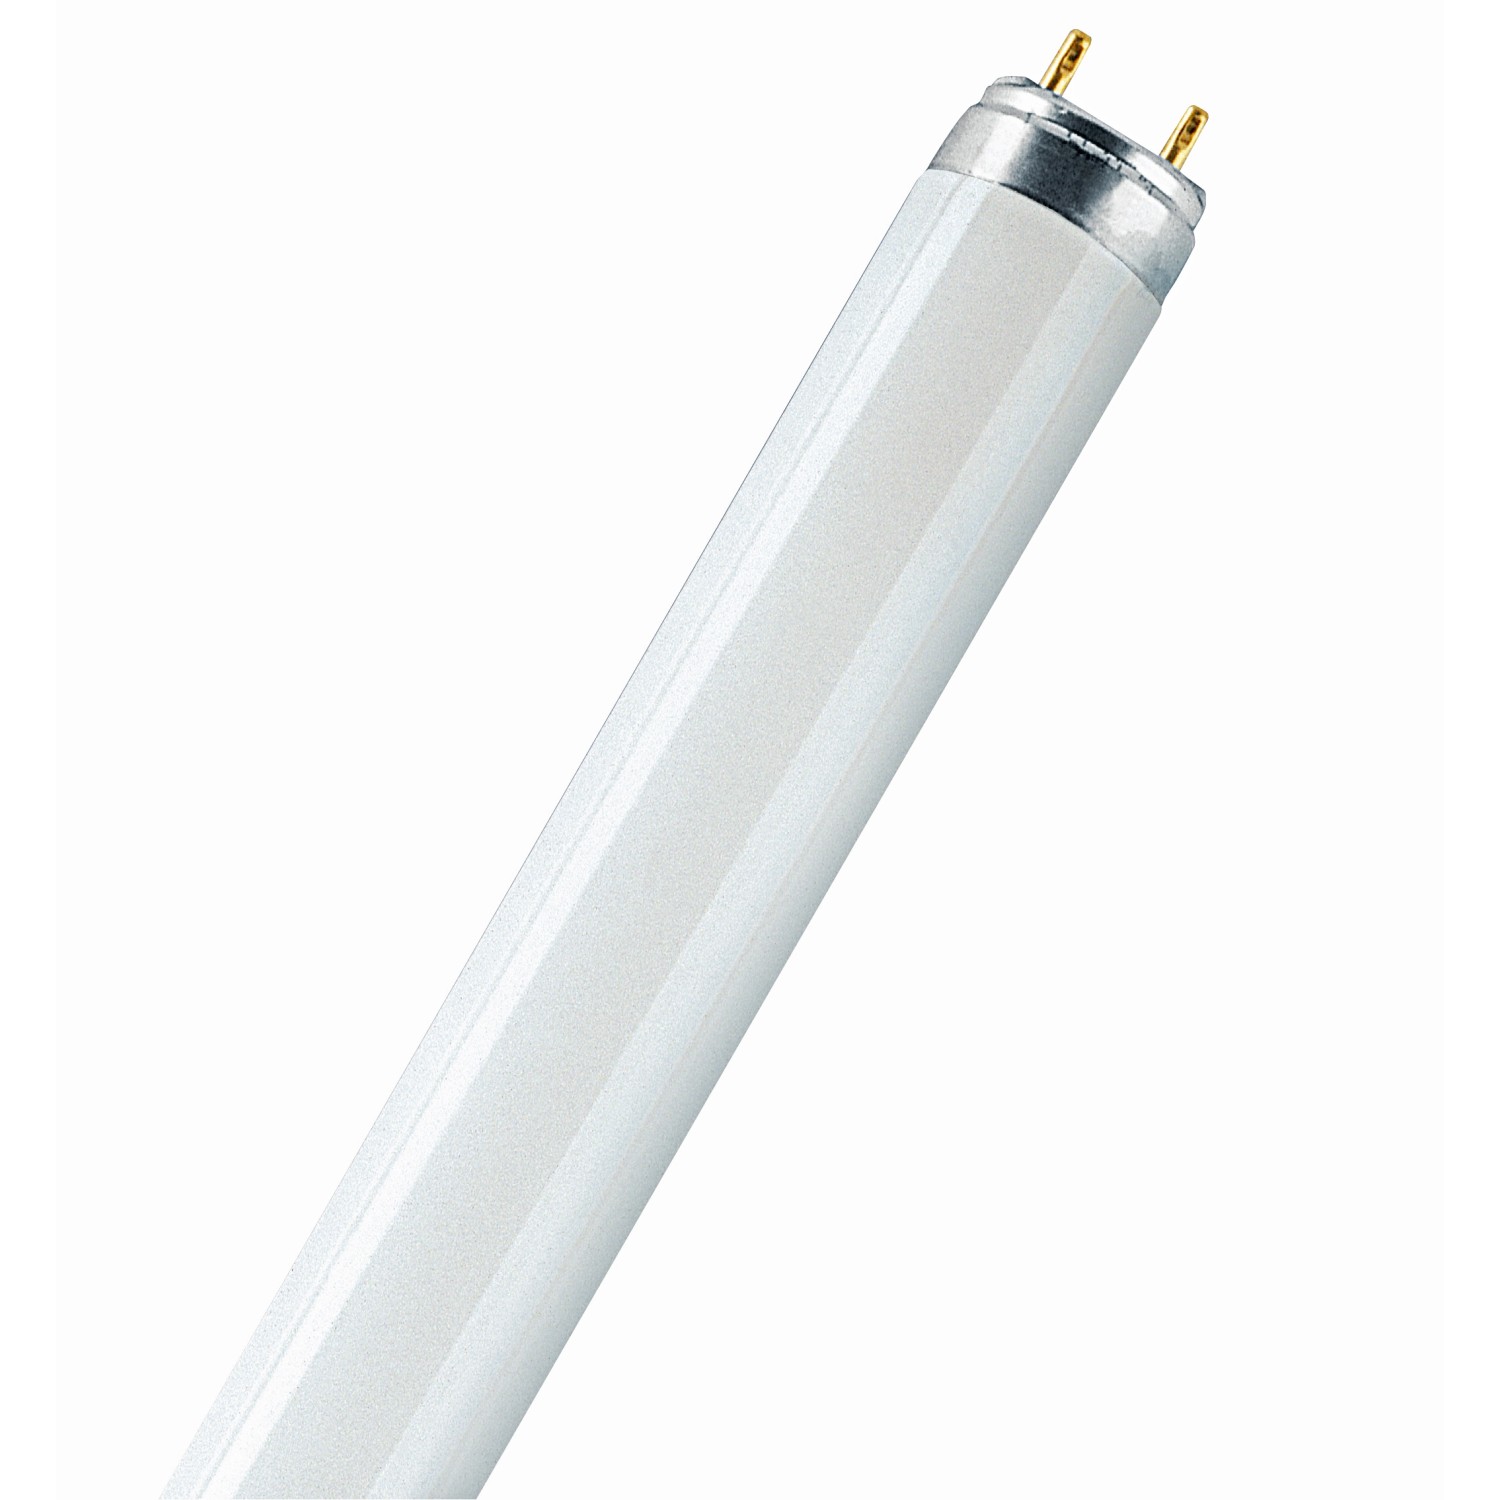 Osram Leuchtstofflampe G13 Röhrenform 30 W 2400 lm 90,9 x 2,55 cm (H x Ø)  kaufen bei OBI